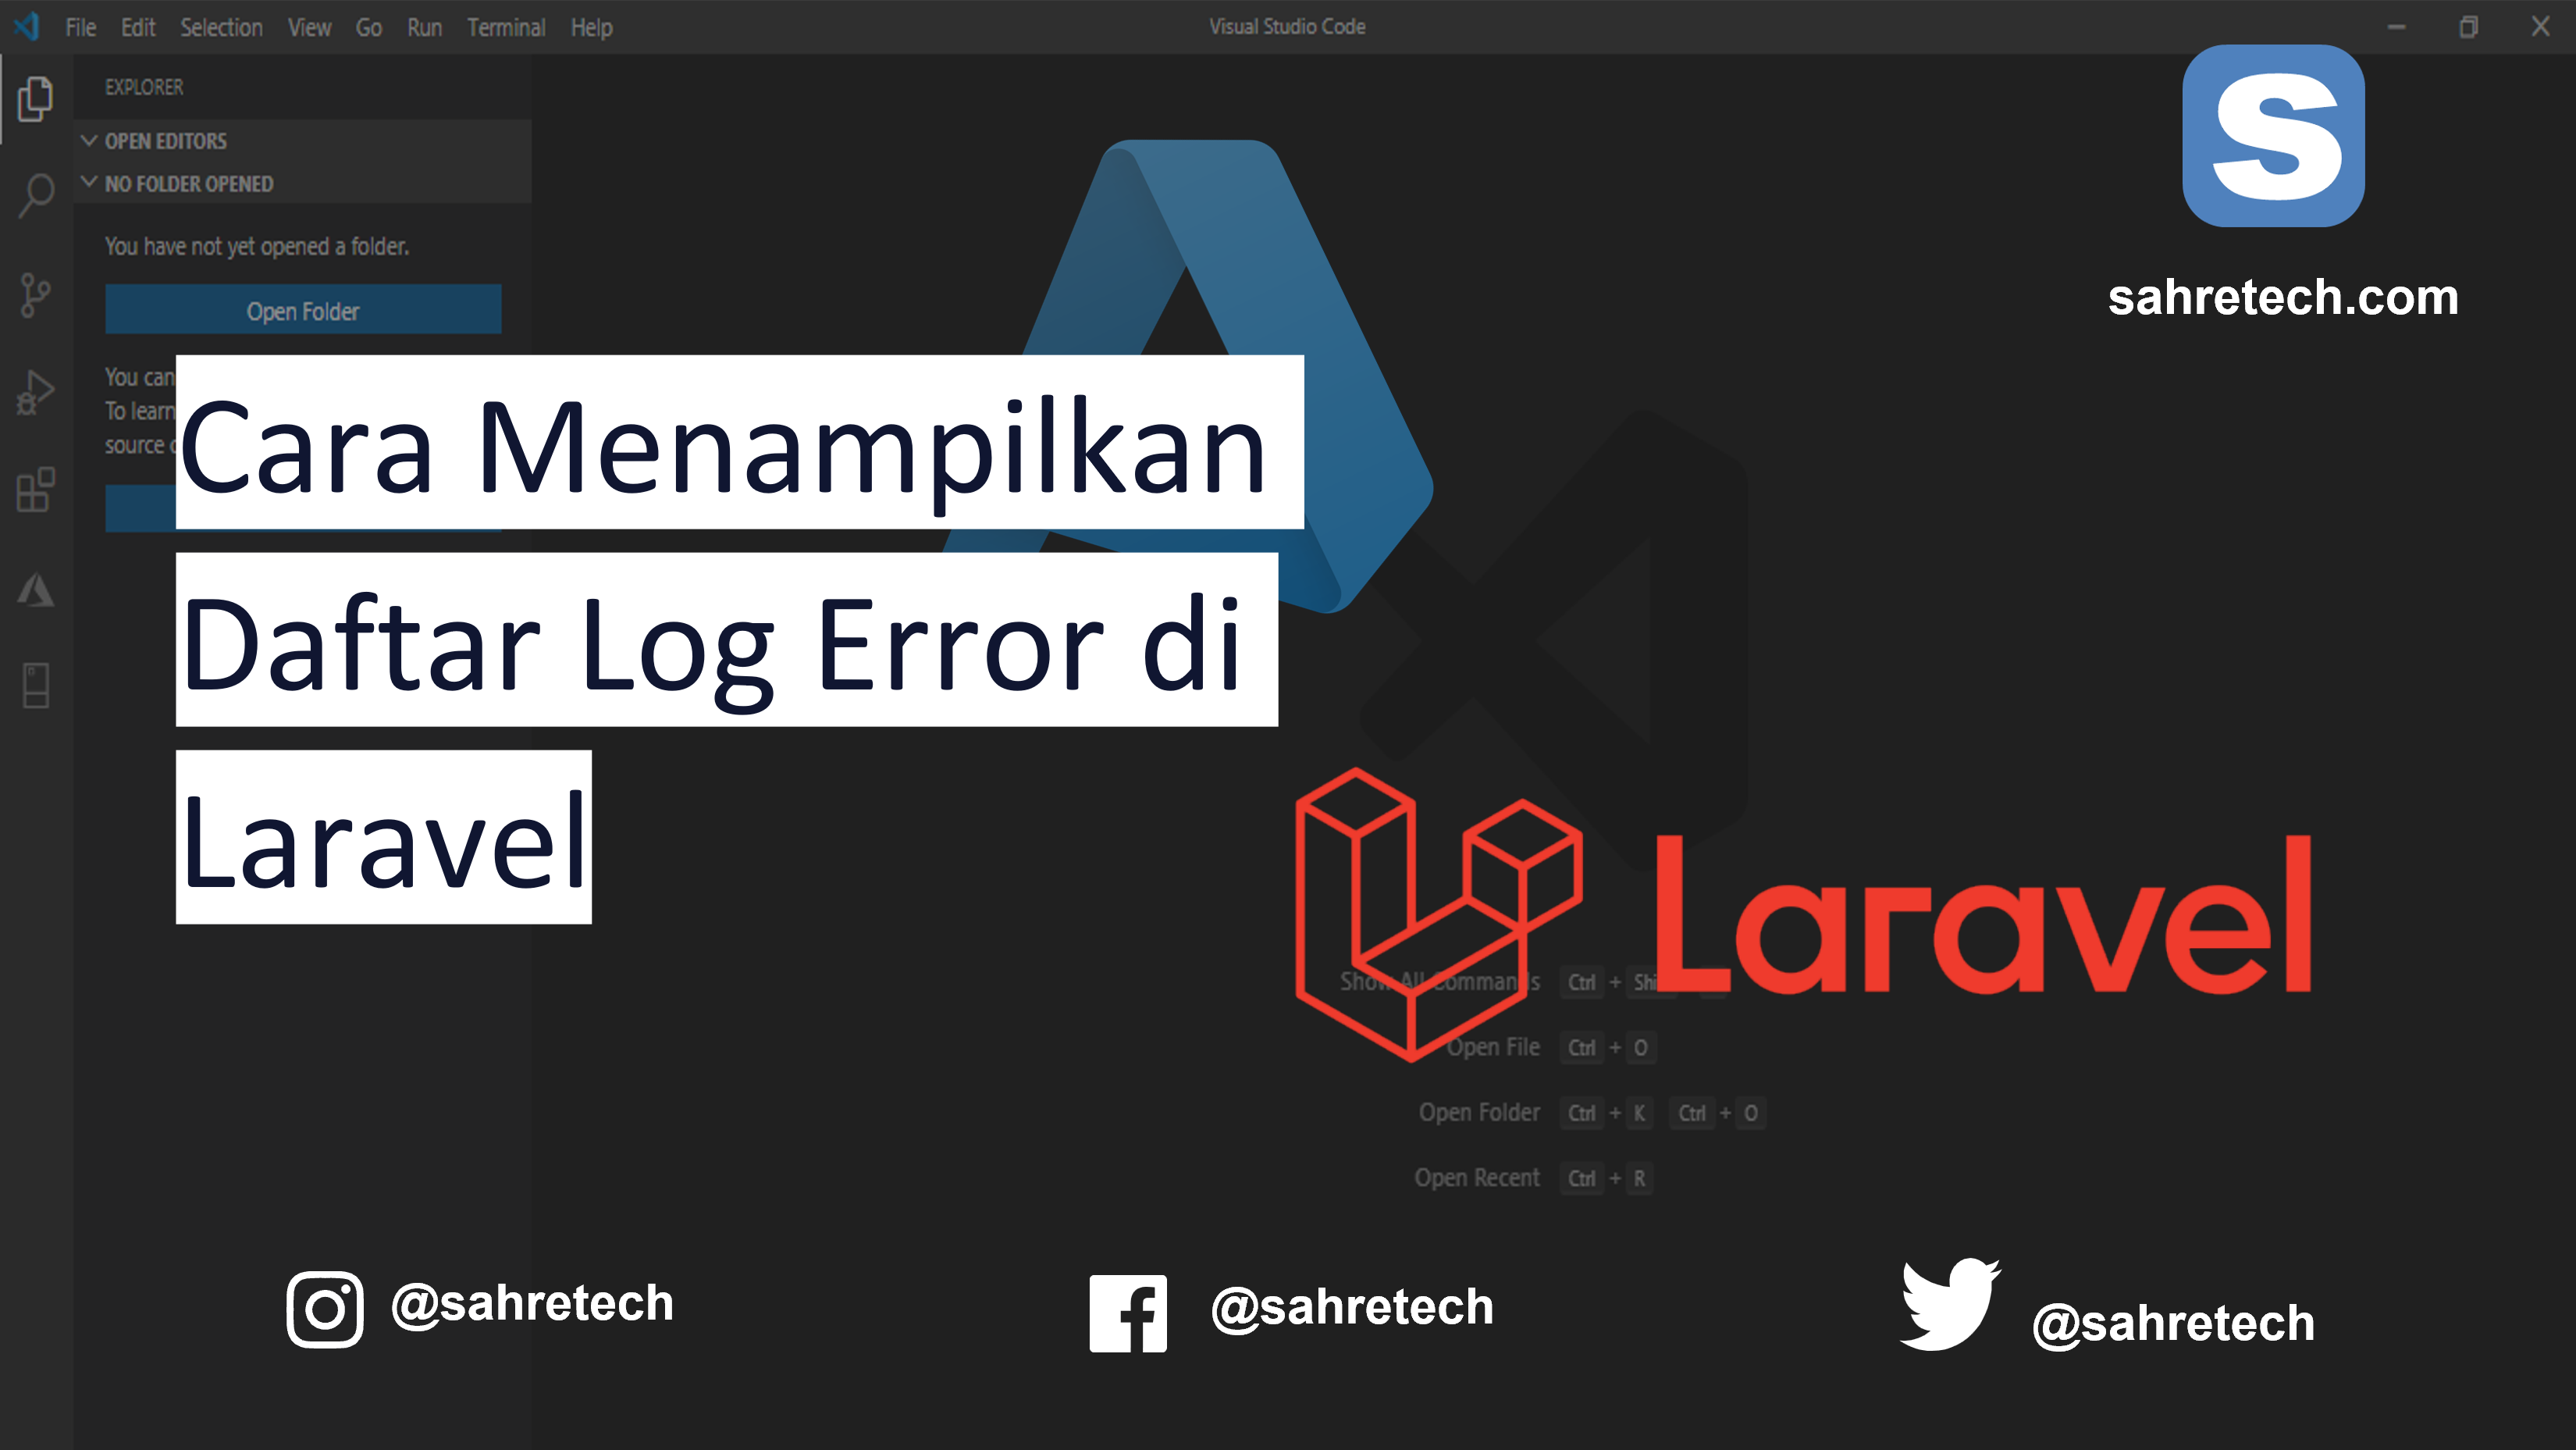 Cara Menampilkan Daftar Log Error di Laravel